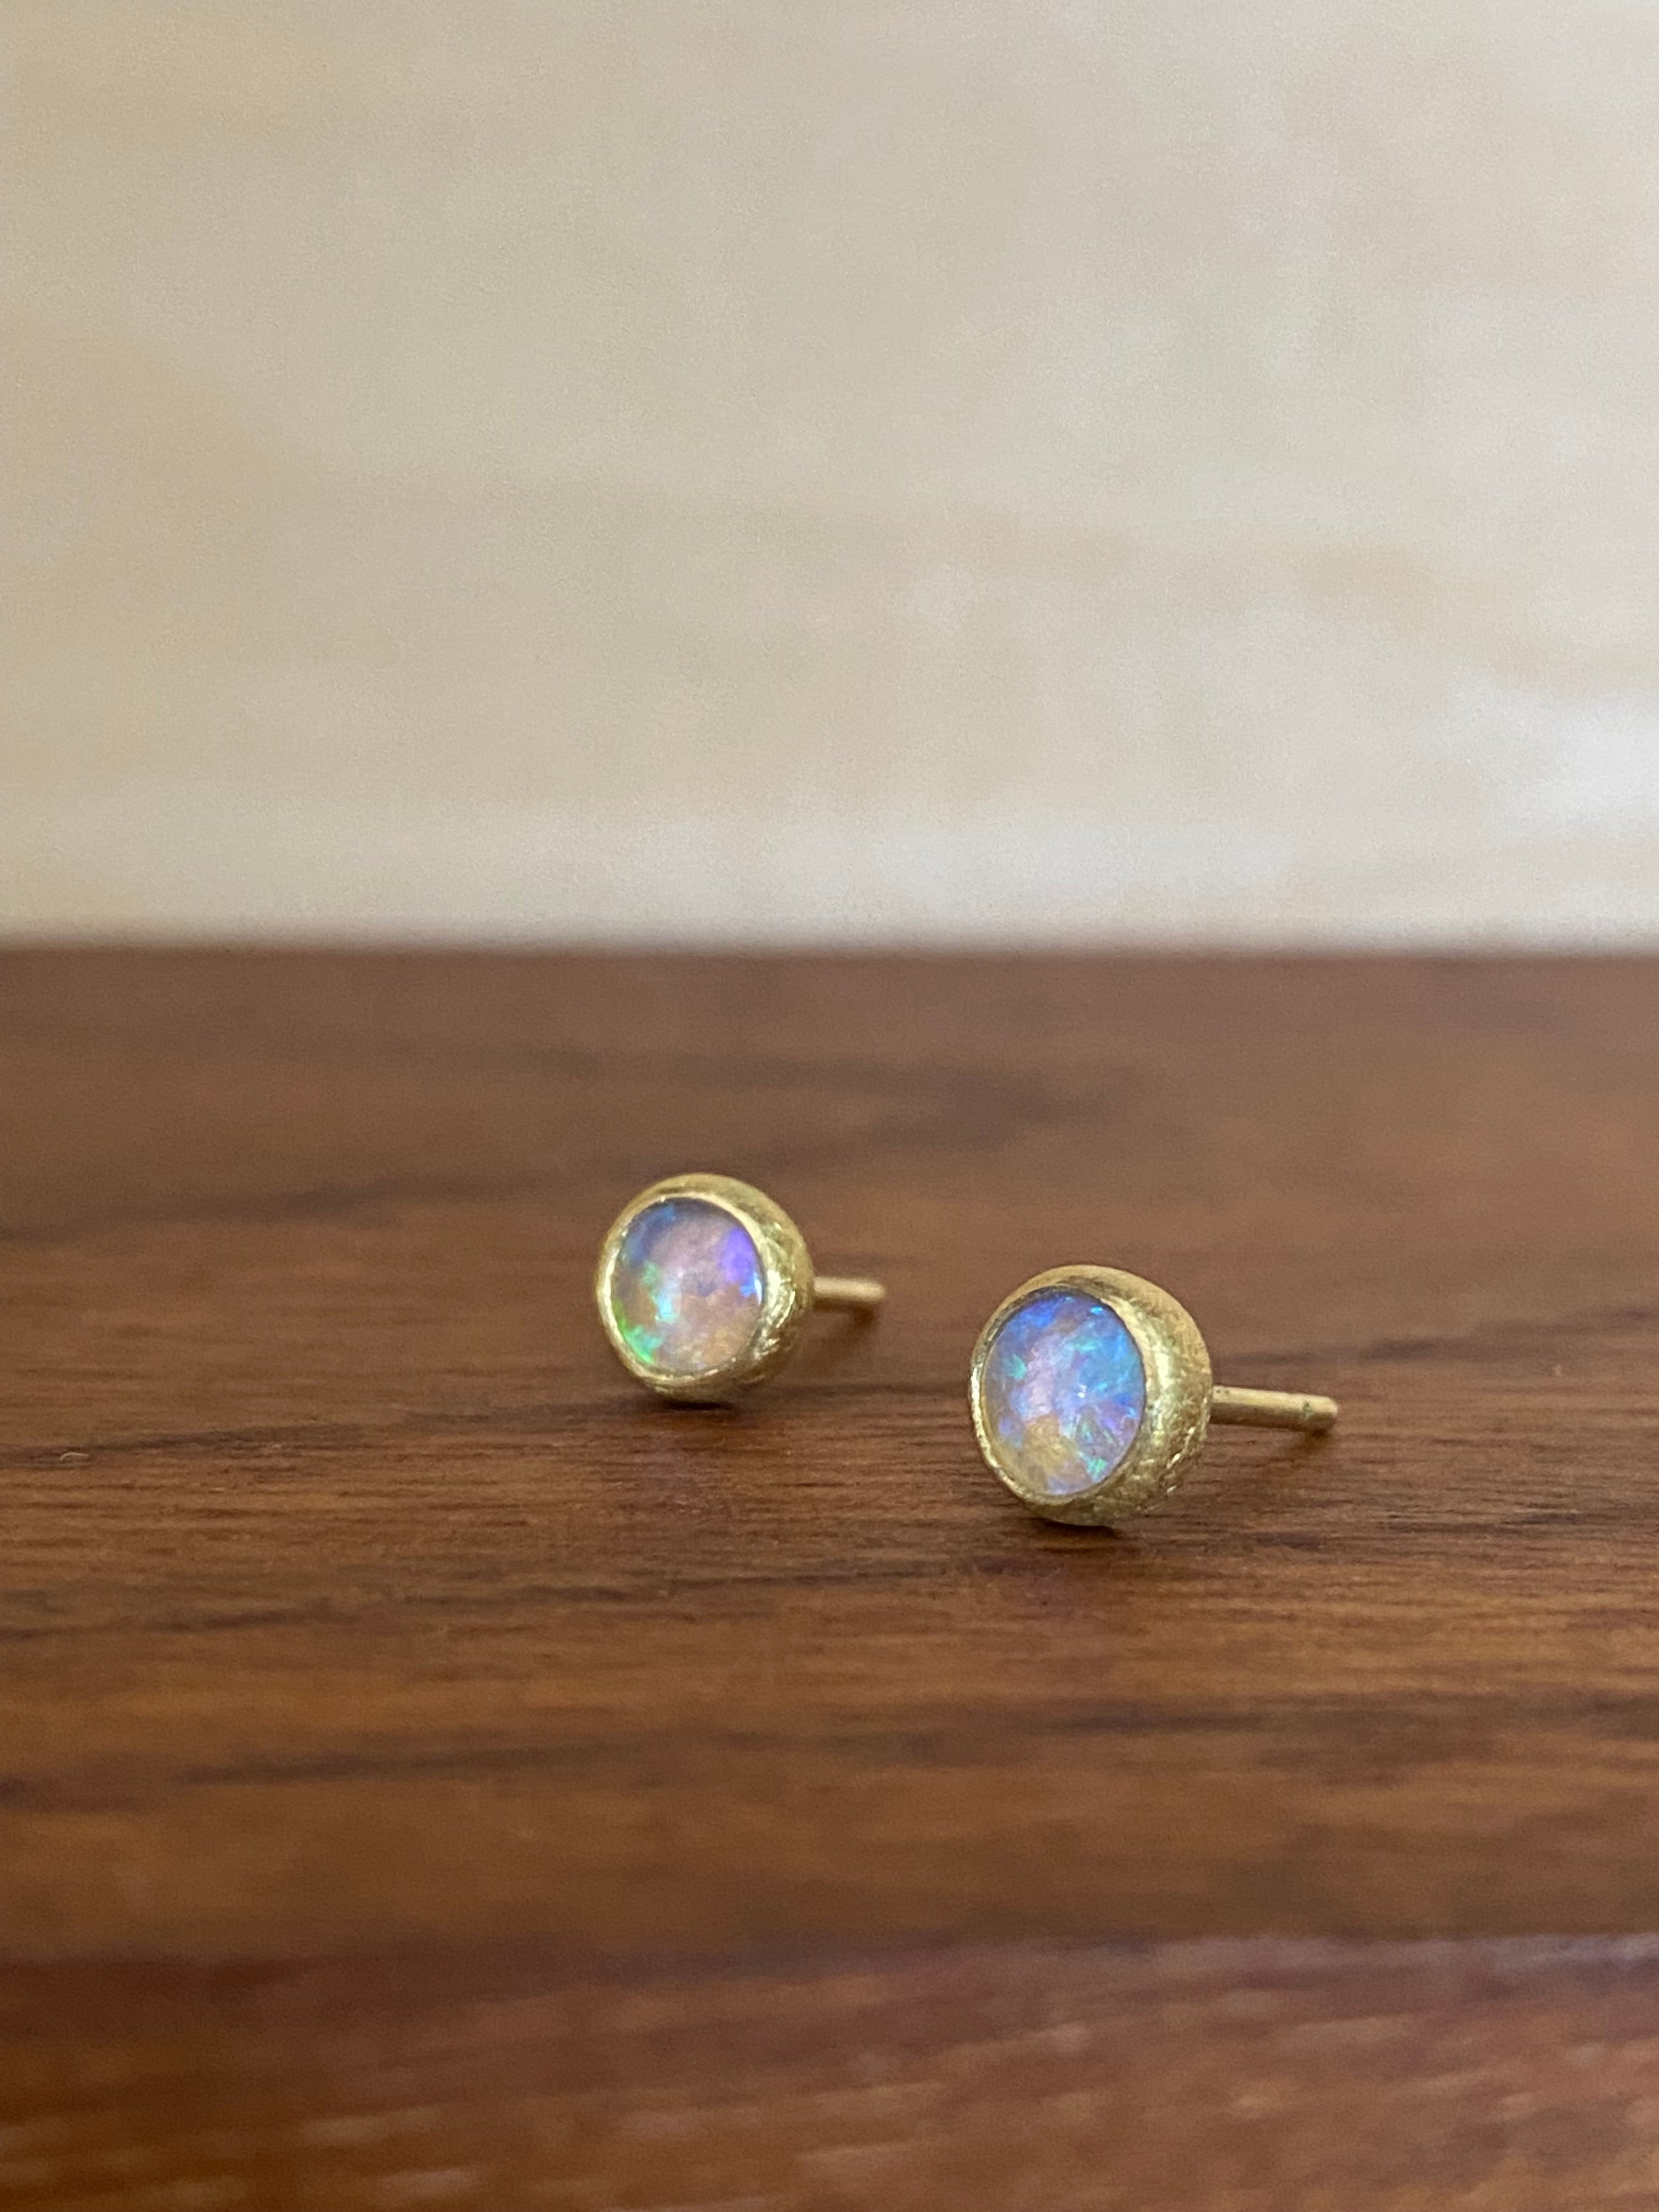 Siedra Loeffler- Round Opal Stud Earrings with Blue Hue